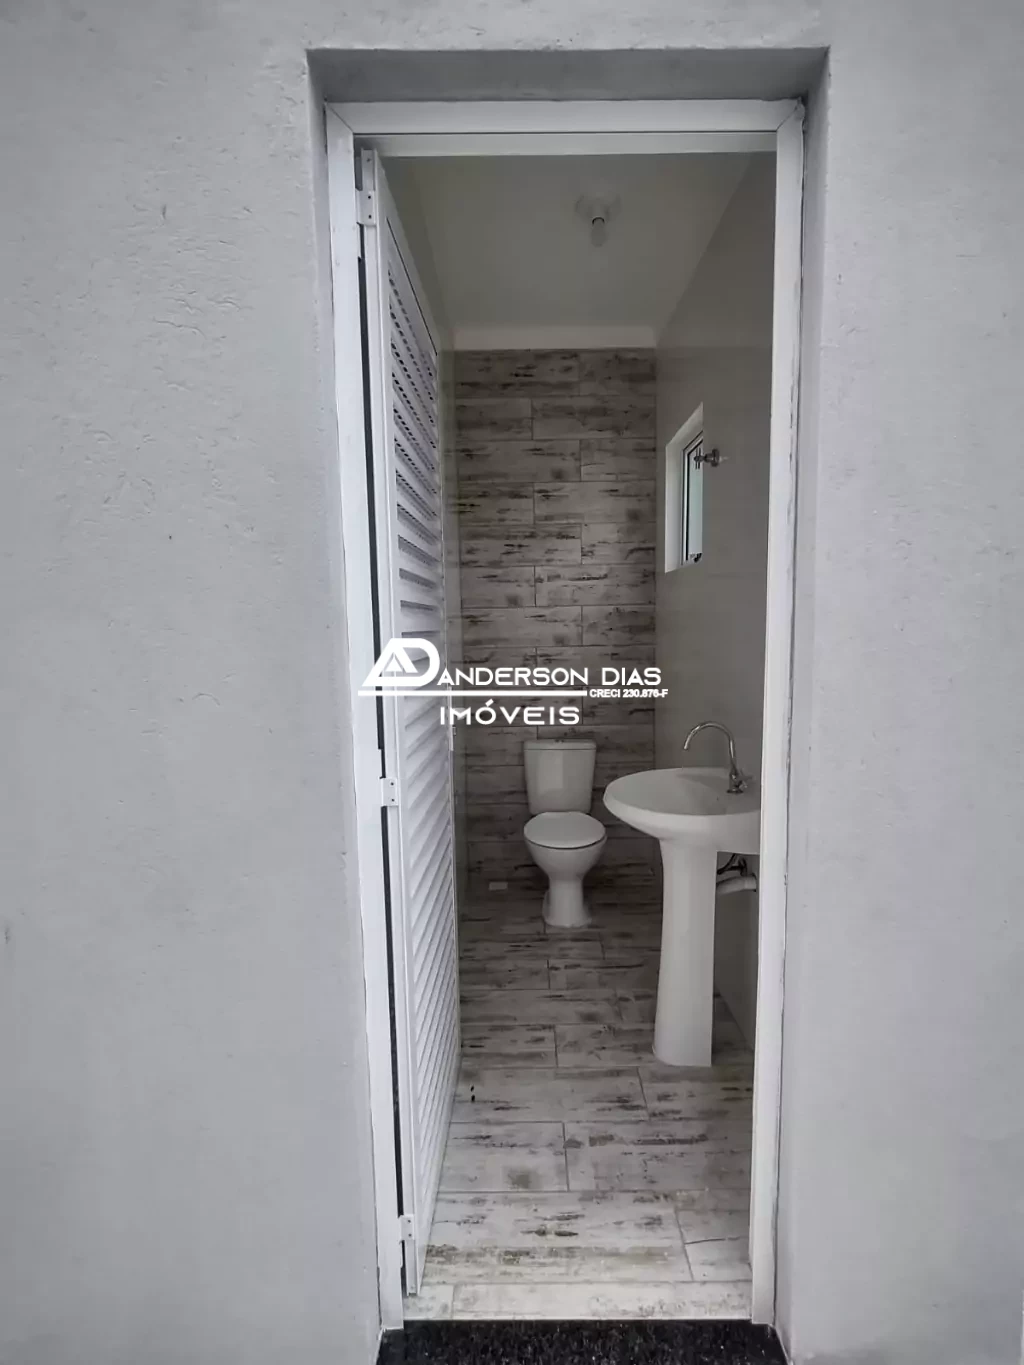 Casa em Condomínio com 1 dormitórios com 55,00m² para locação definitiva por R$1.400,00 - Praia das Palmeiras - Caraguat